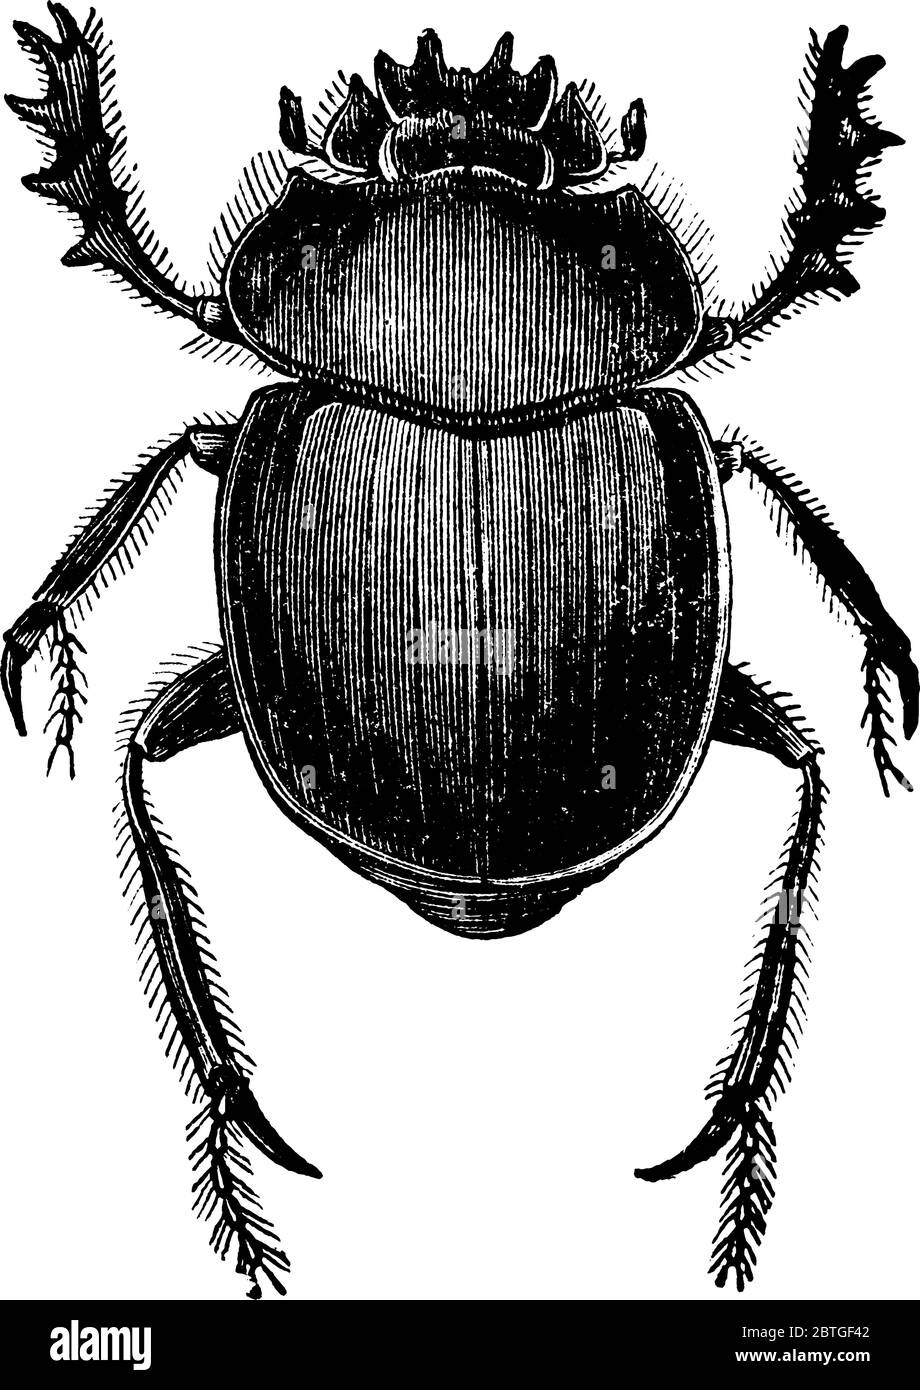 Una rappresentazione tipica del letame sterminato, un insetto della famiglia degli Scarabaeidi. Questo insetto era un'icona sacra per gli Egiziani, disegno vintage linea Illustrazione Vettoriale